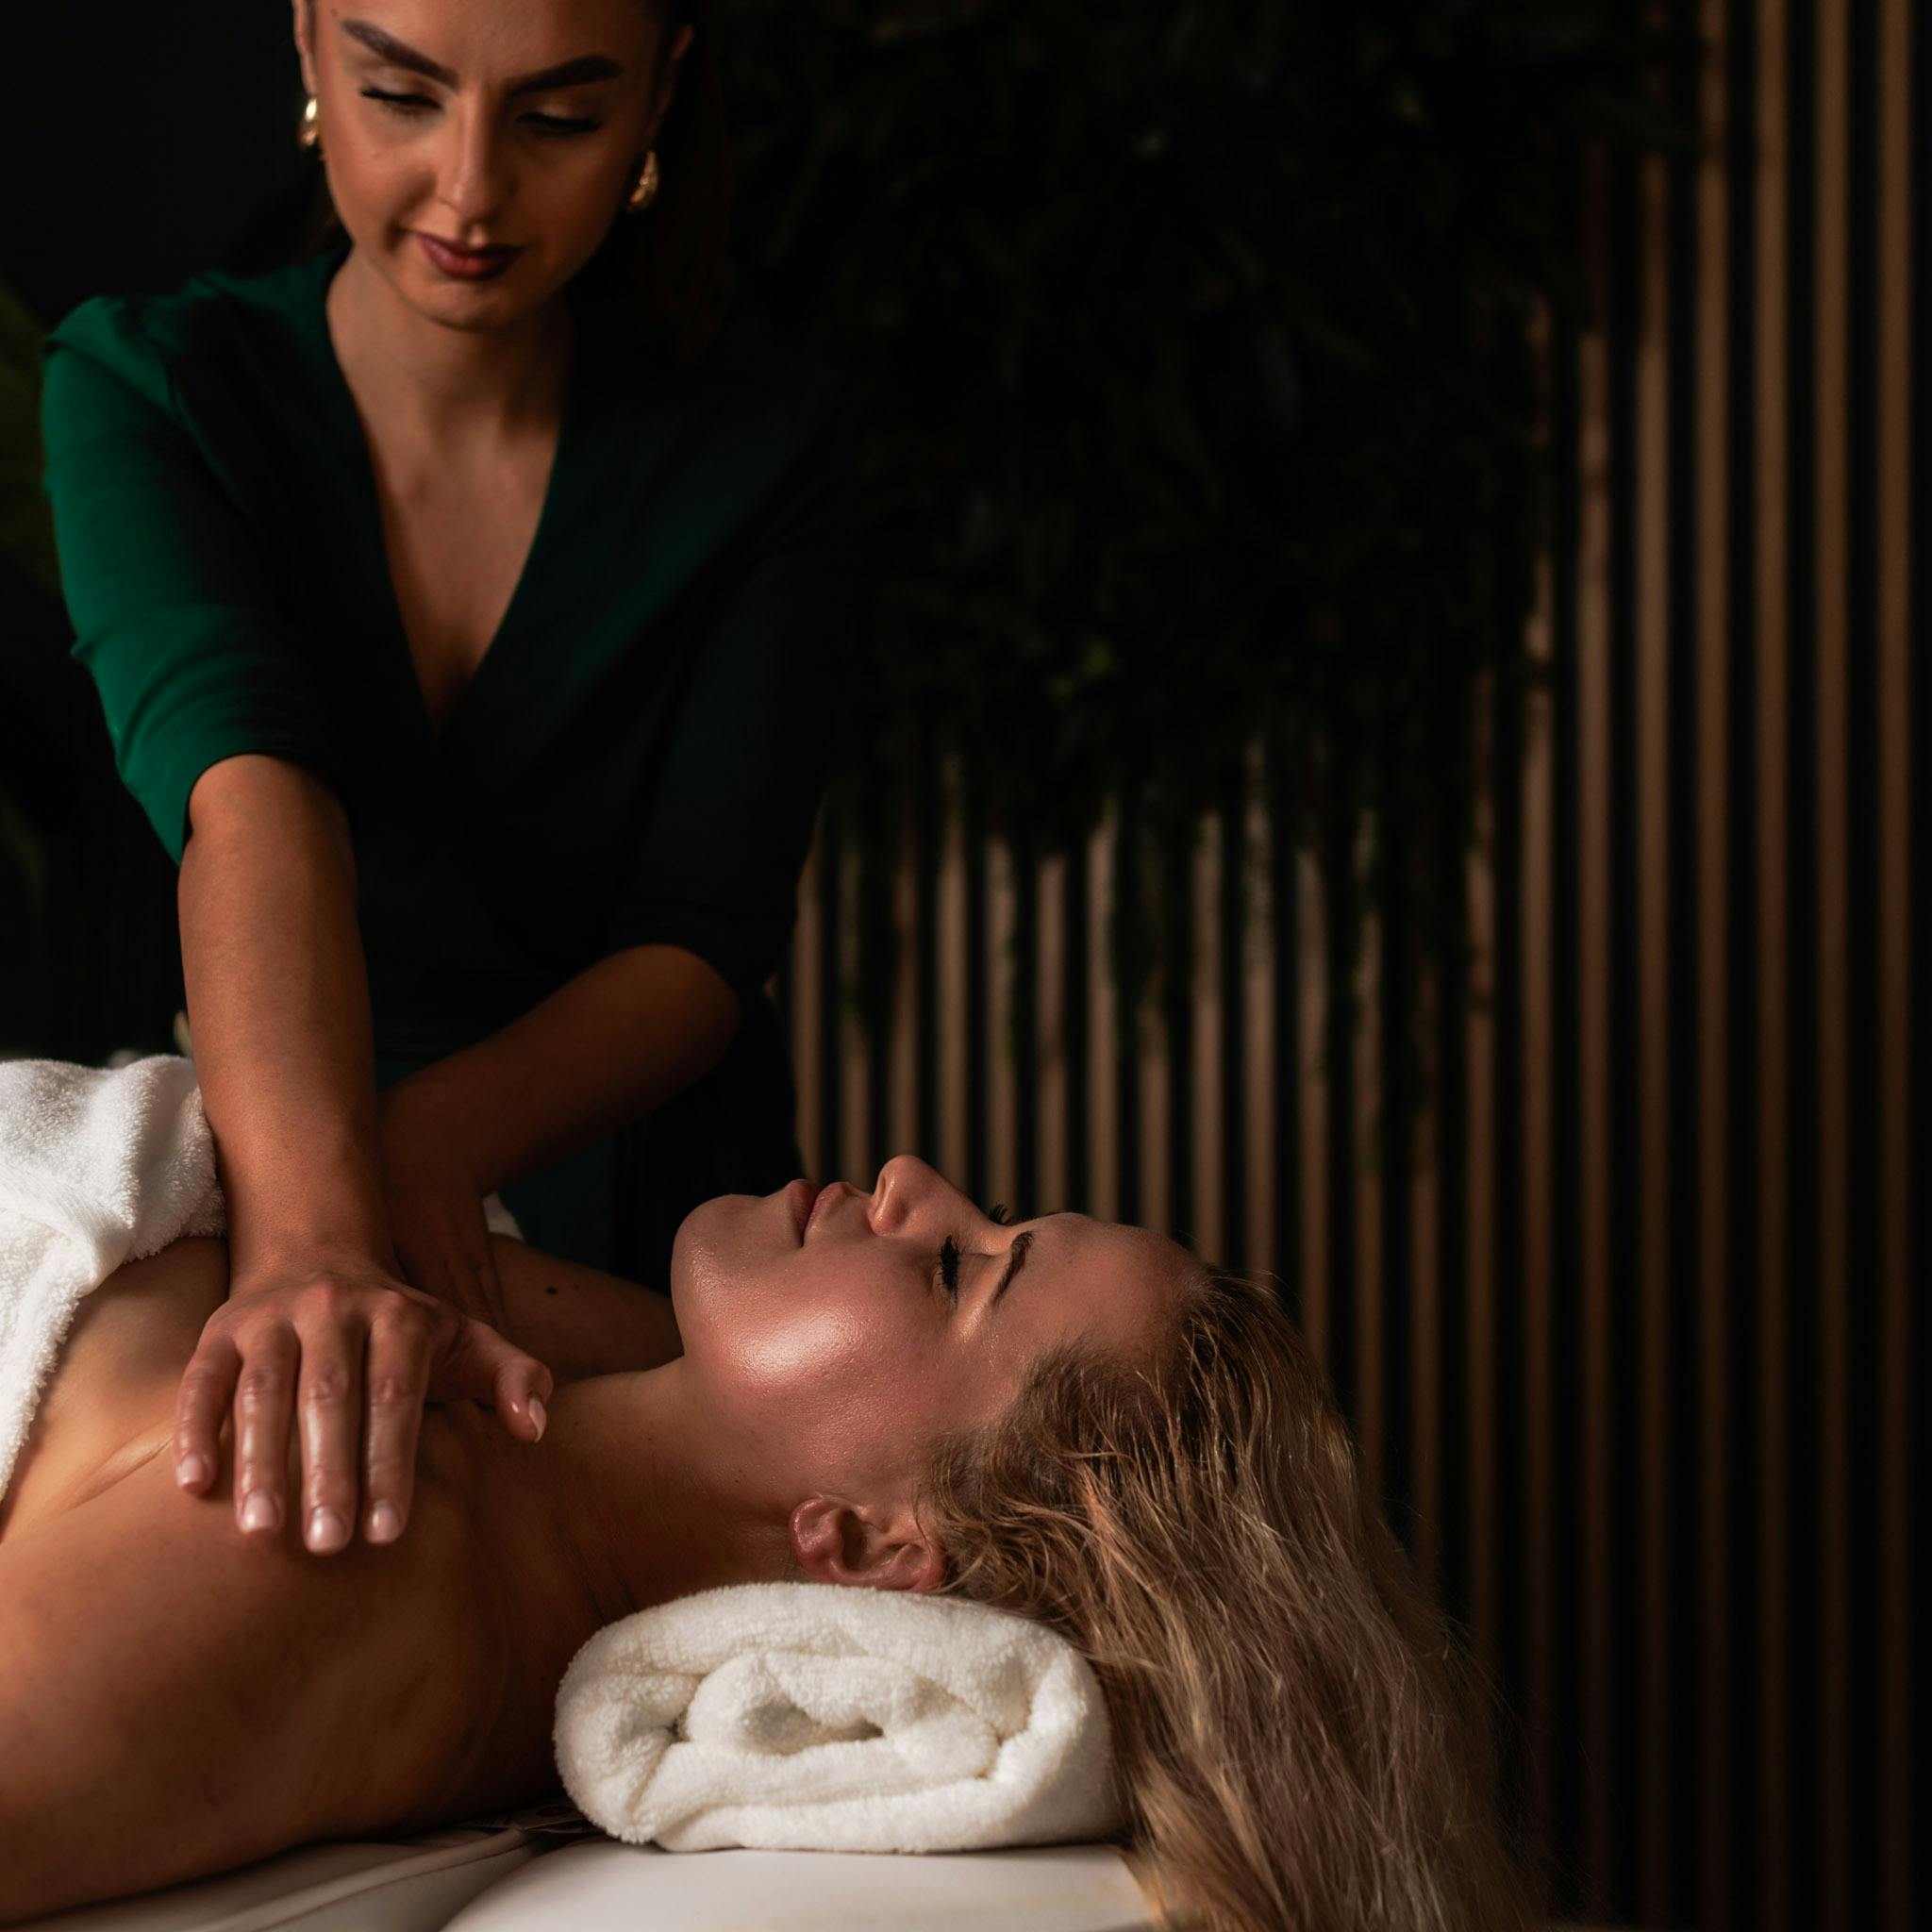 Profesjonalny masaż twarzy wykonywany w salonie piękności Health & Beauty w Krakowie, jedna z wielu usług dostępnych do wyboru dla posiadaczy vouchera prezentowego.